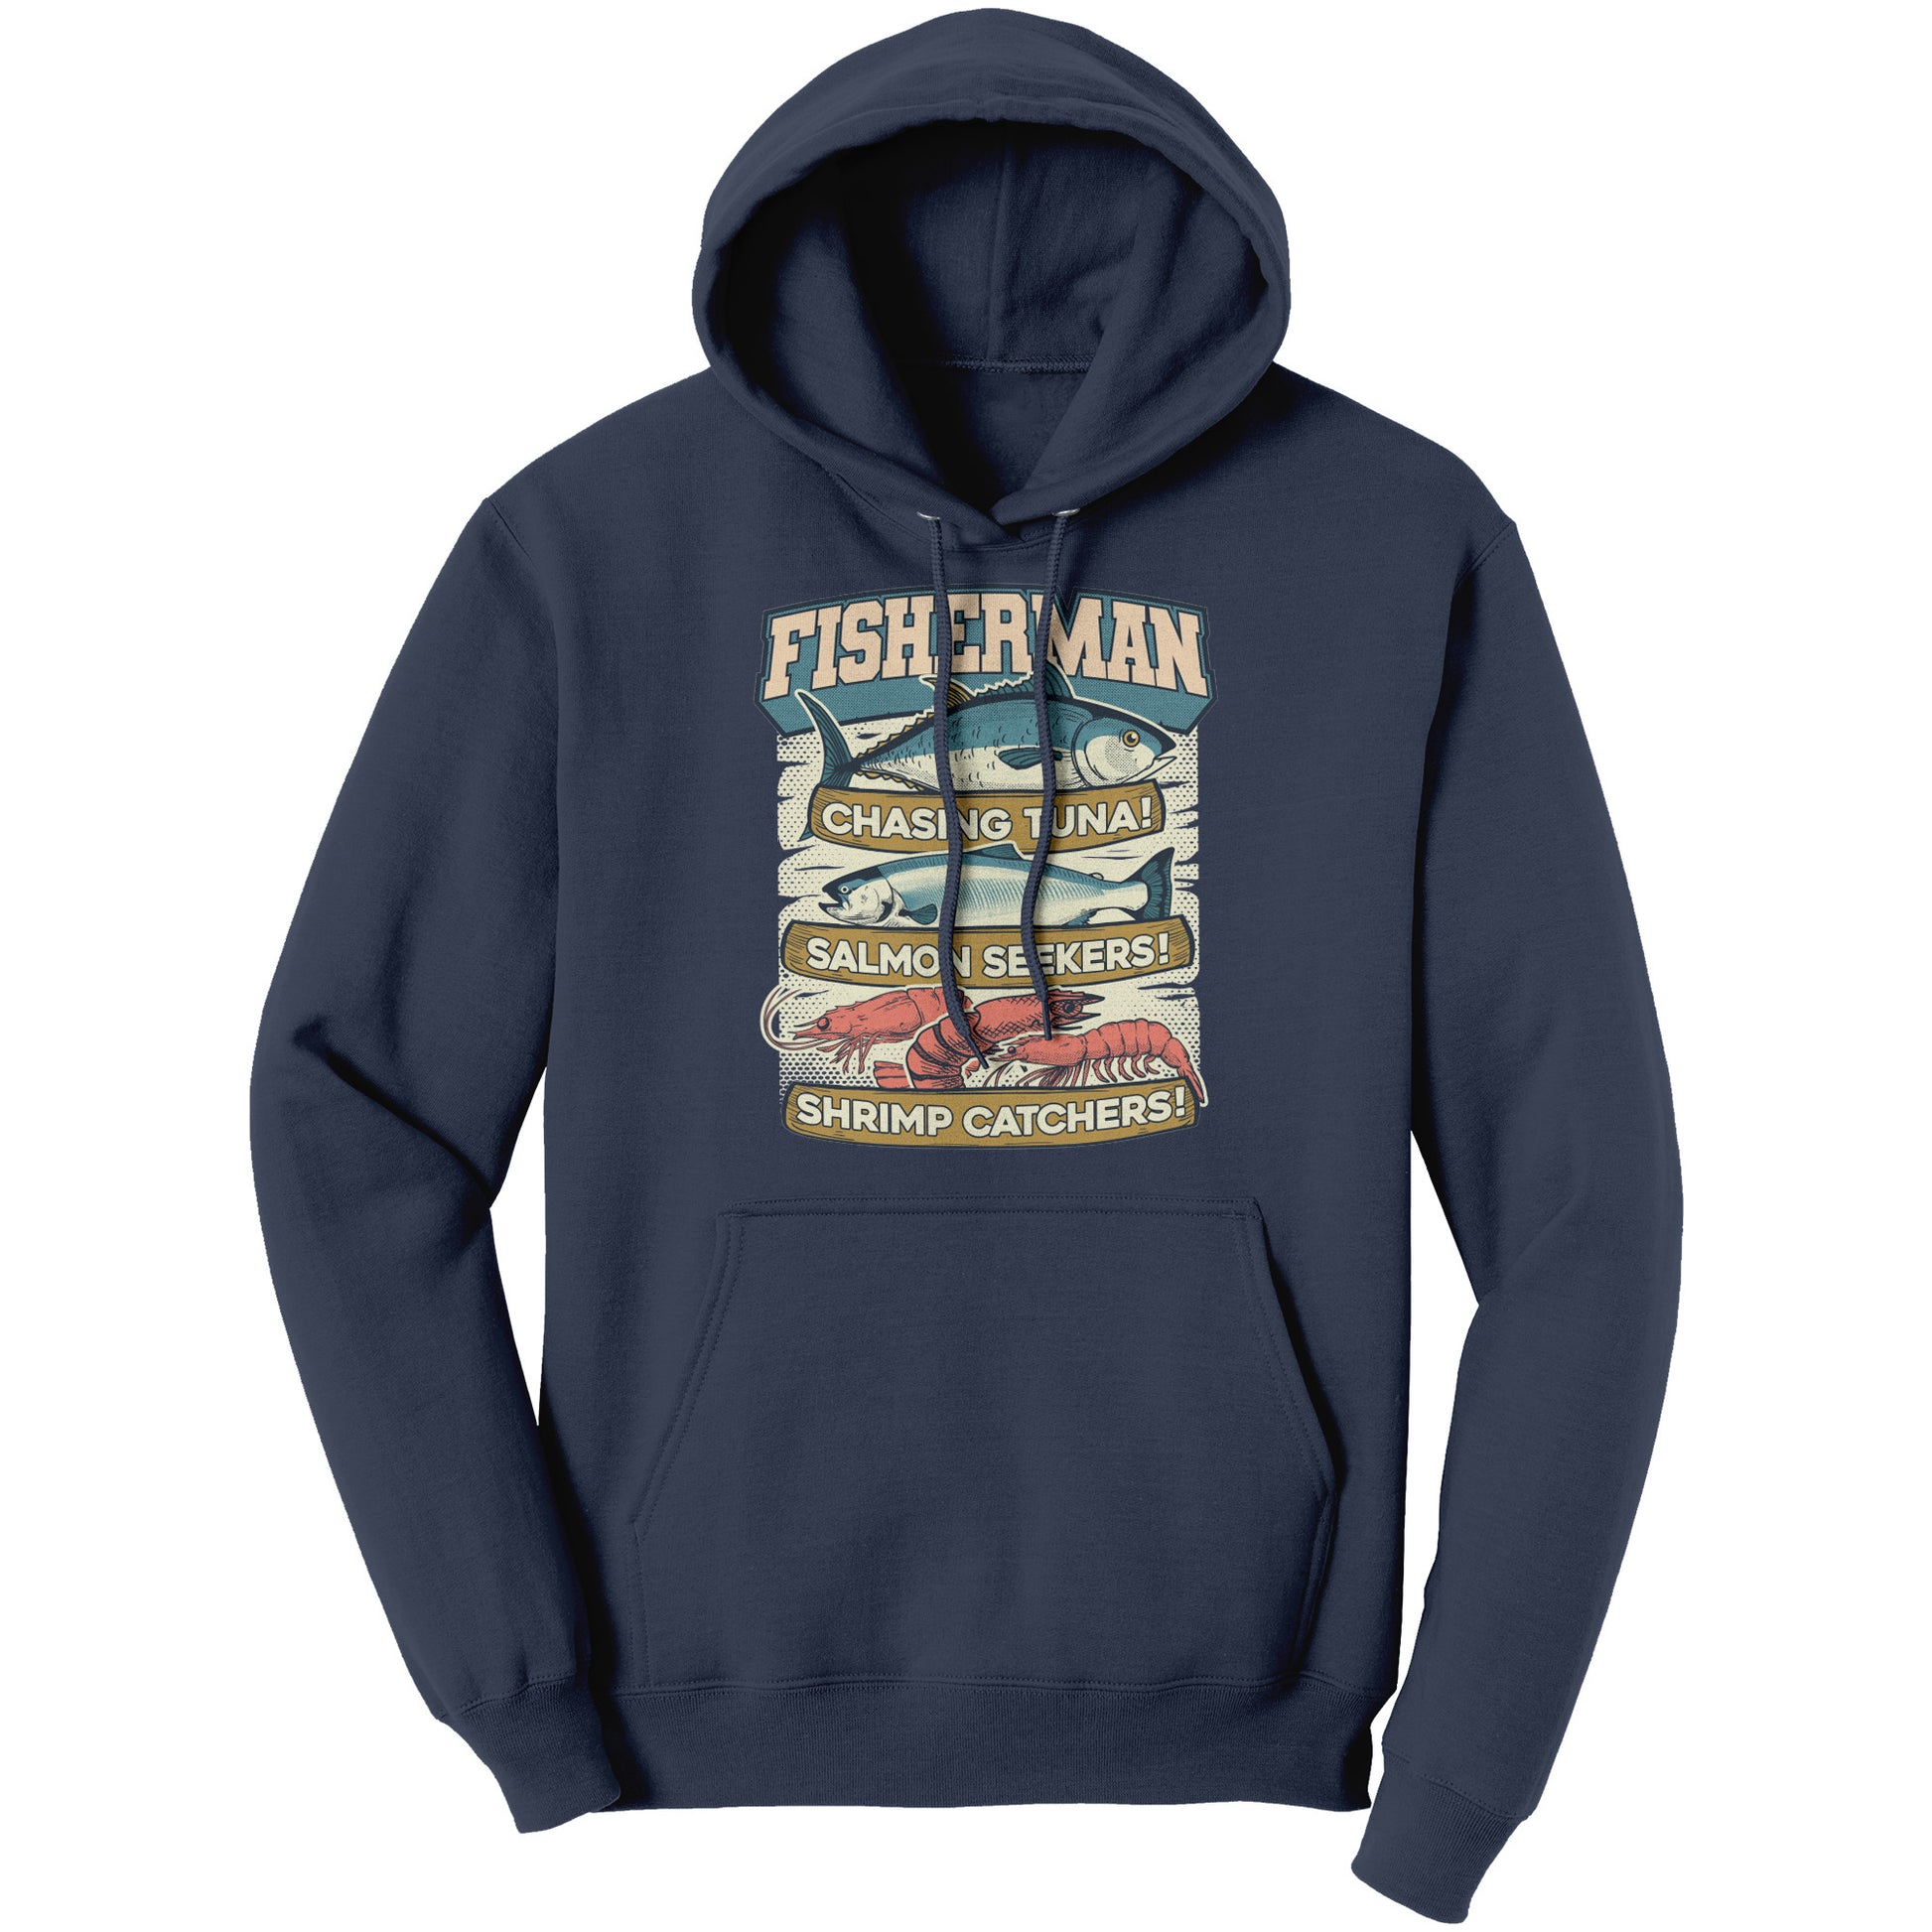 Buy Fisherman T-Shirt